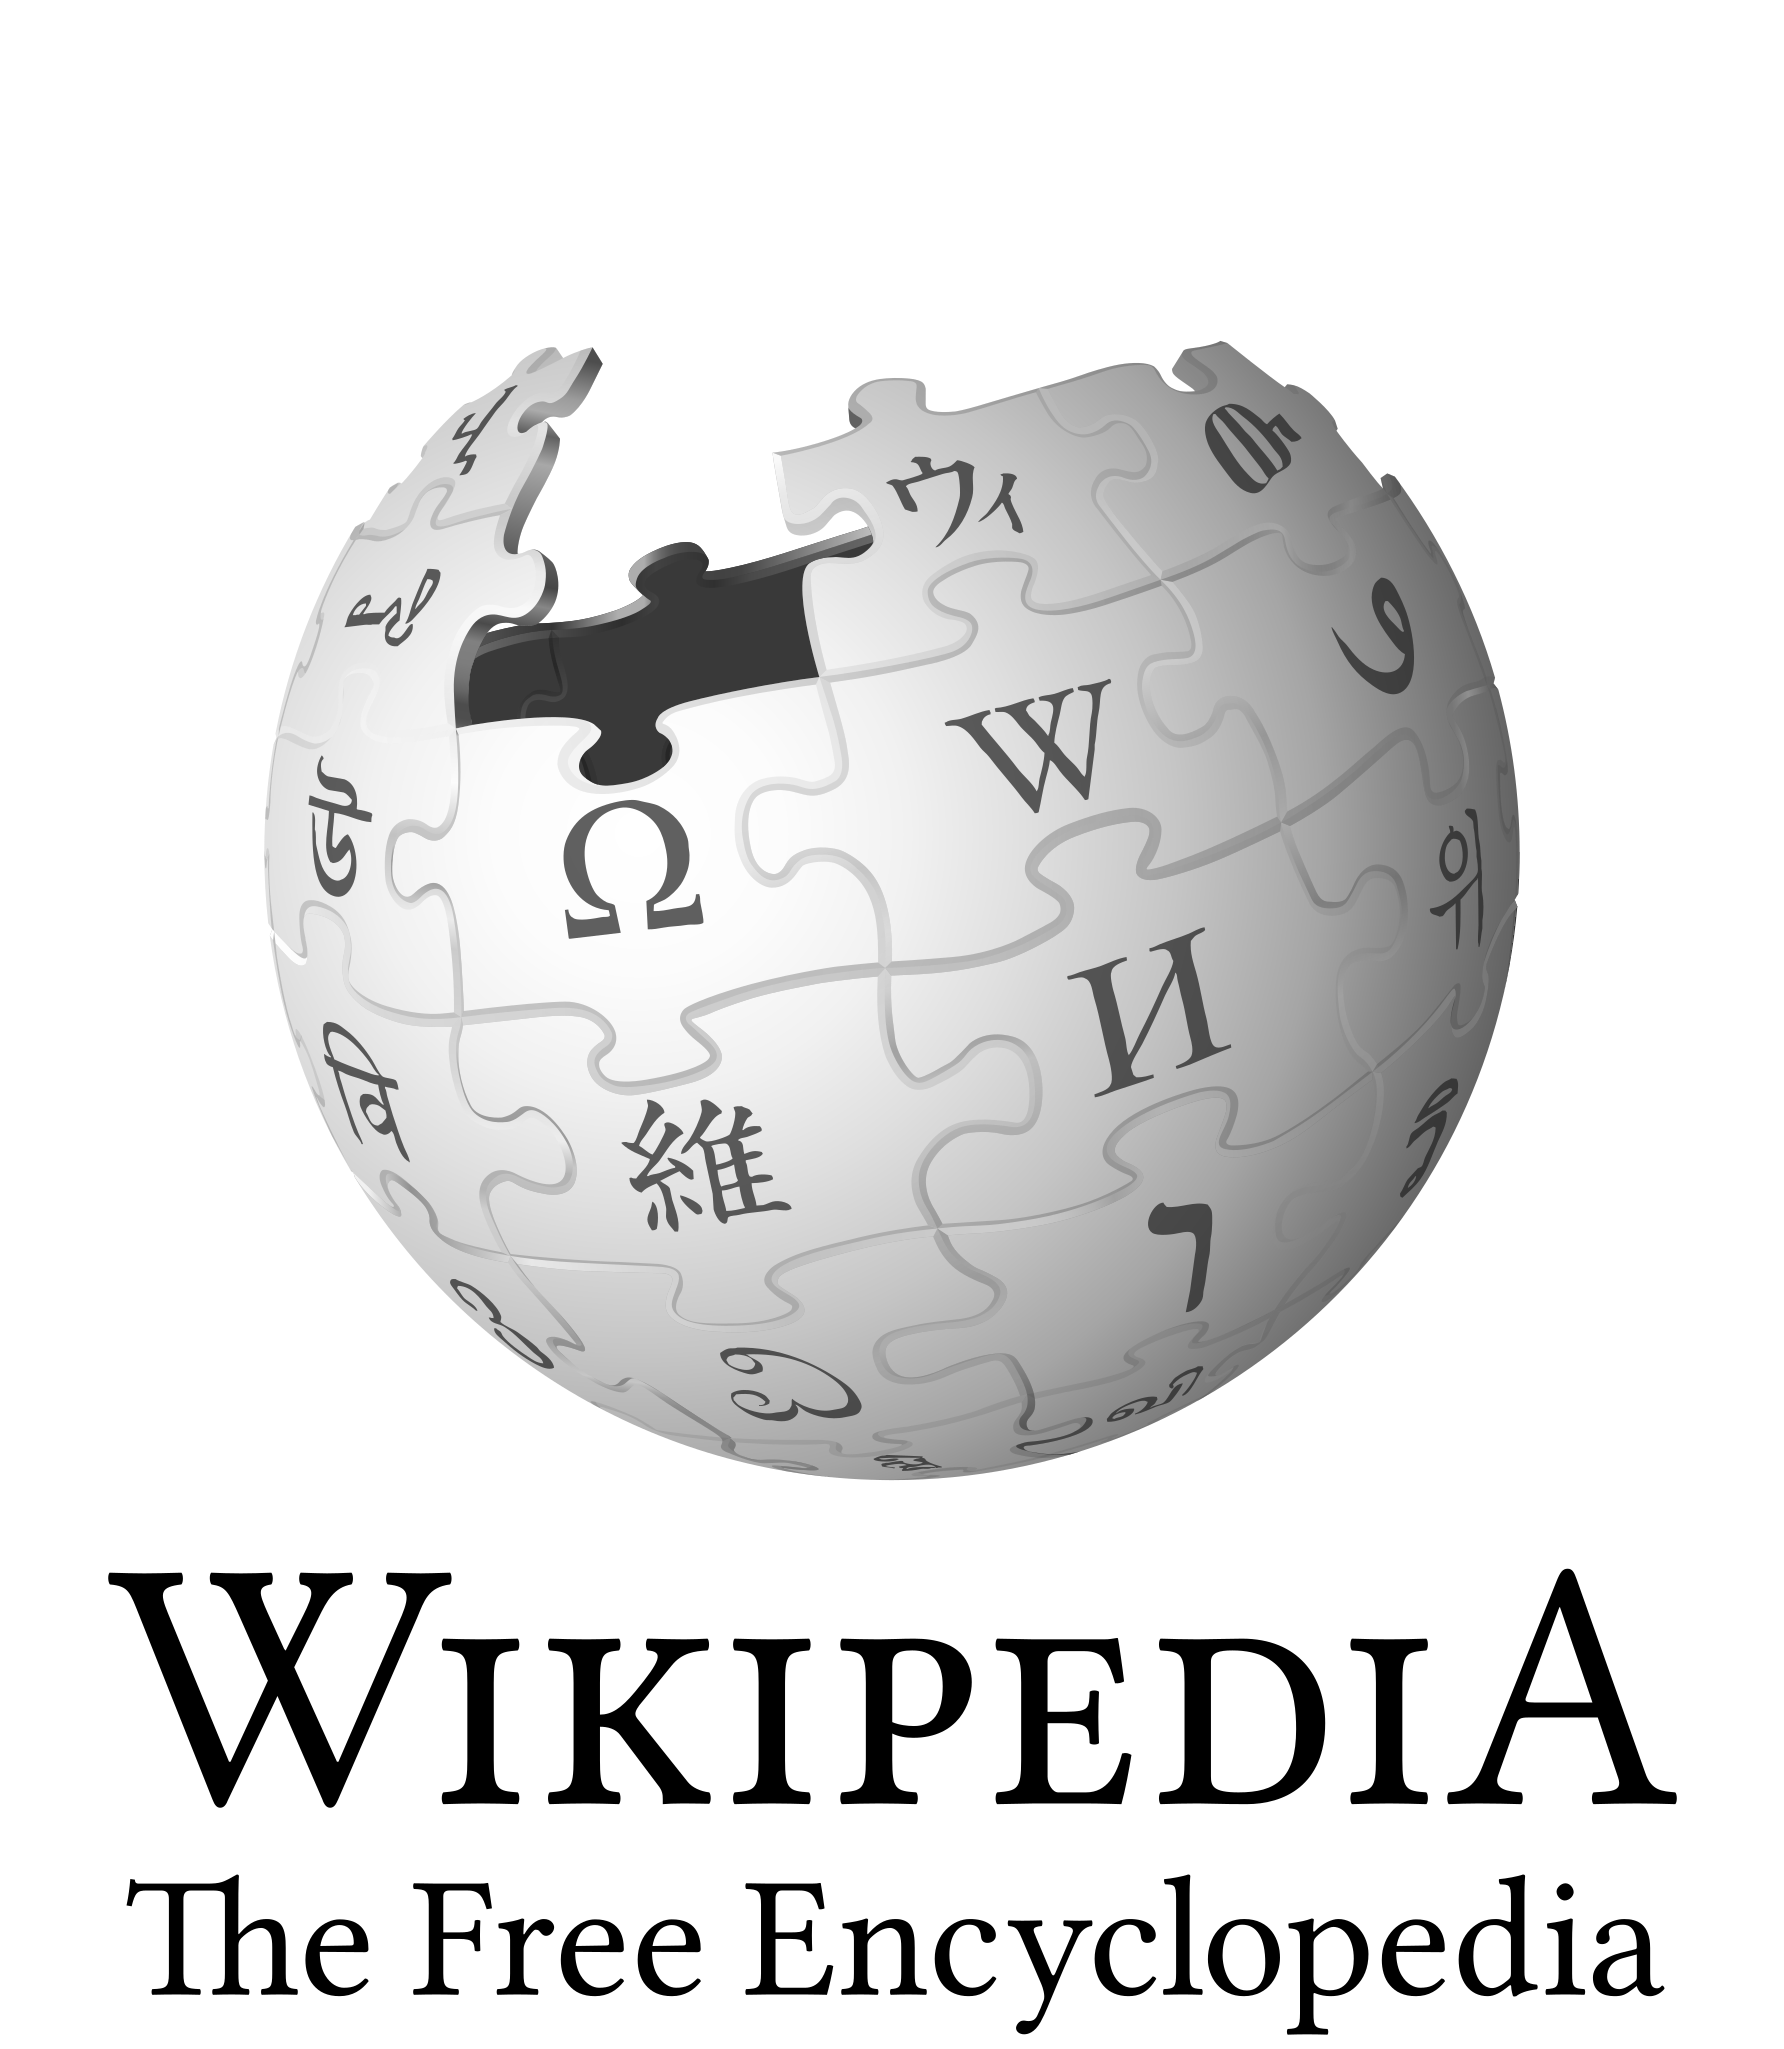 File:Wikipedia-logo thue.png - Wikipedia